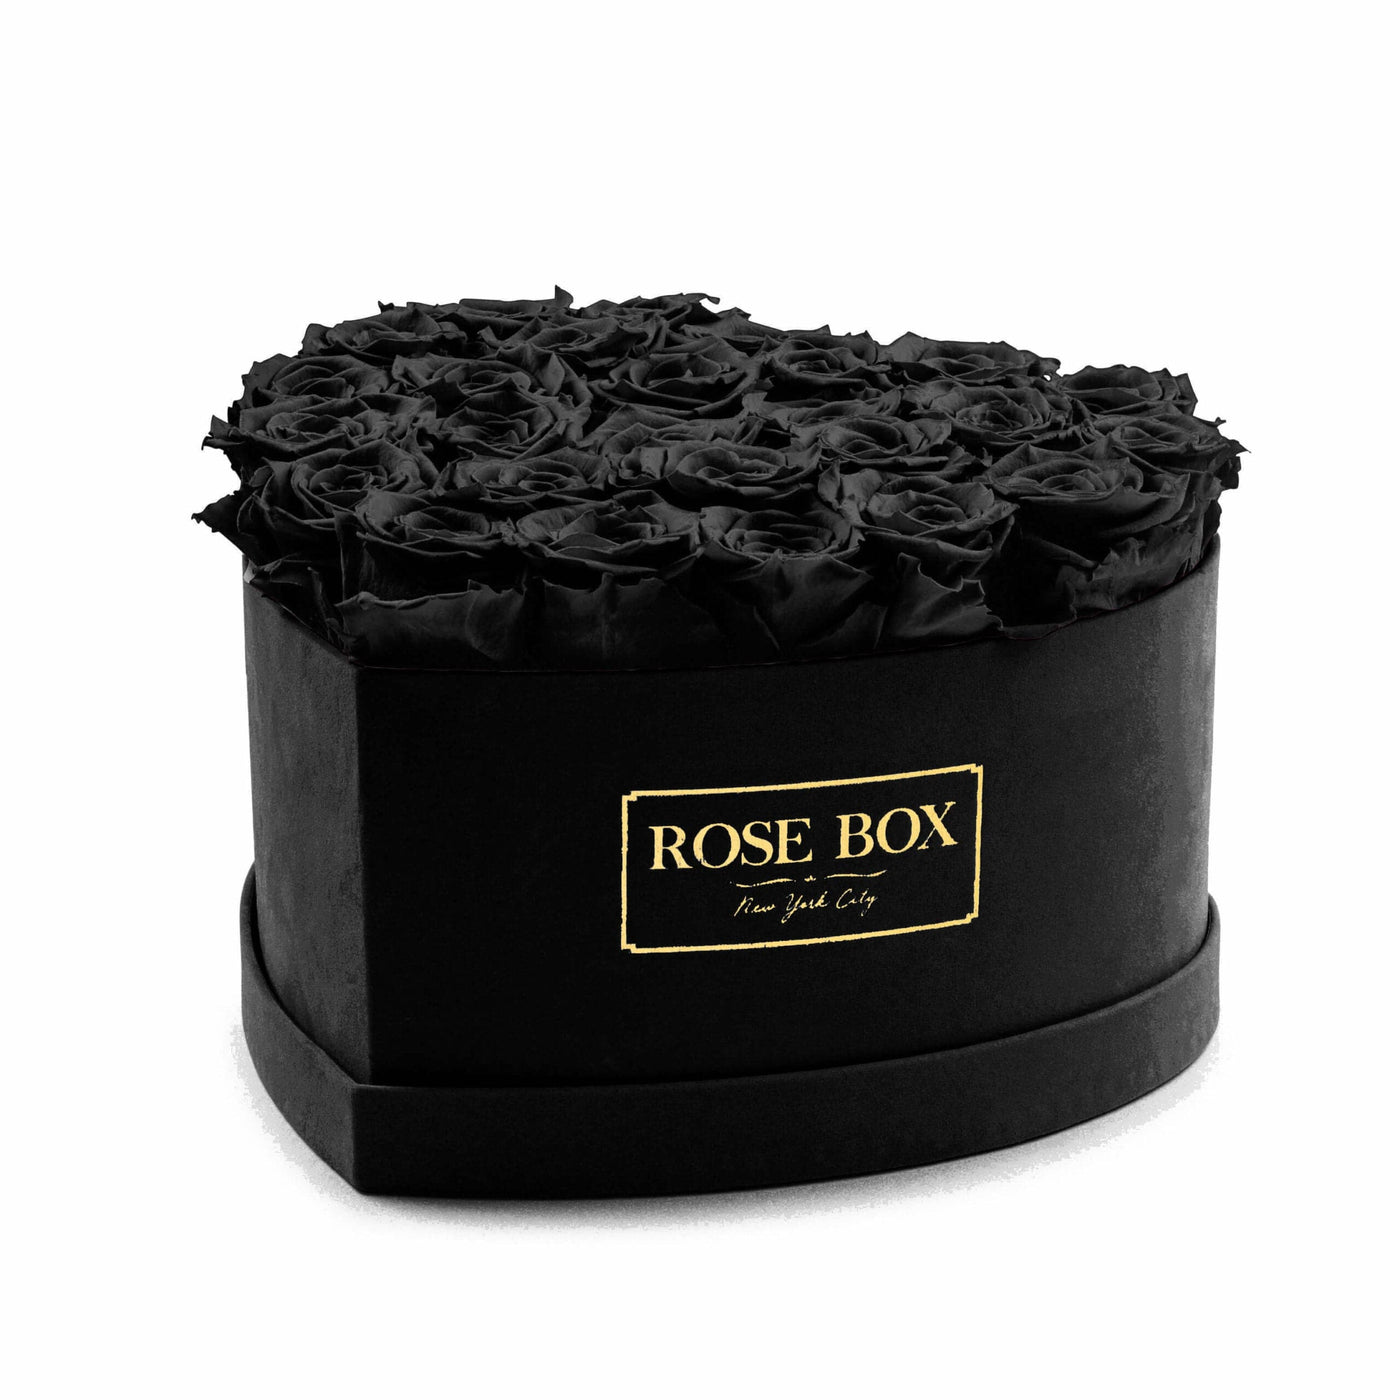 Large Black Heart Box with Velvet Black Roses